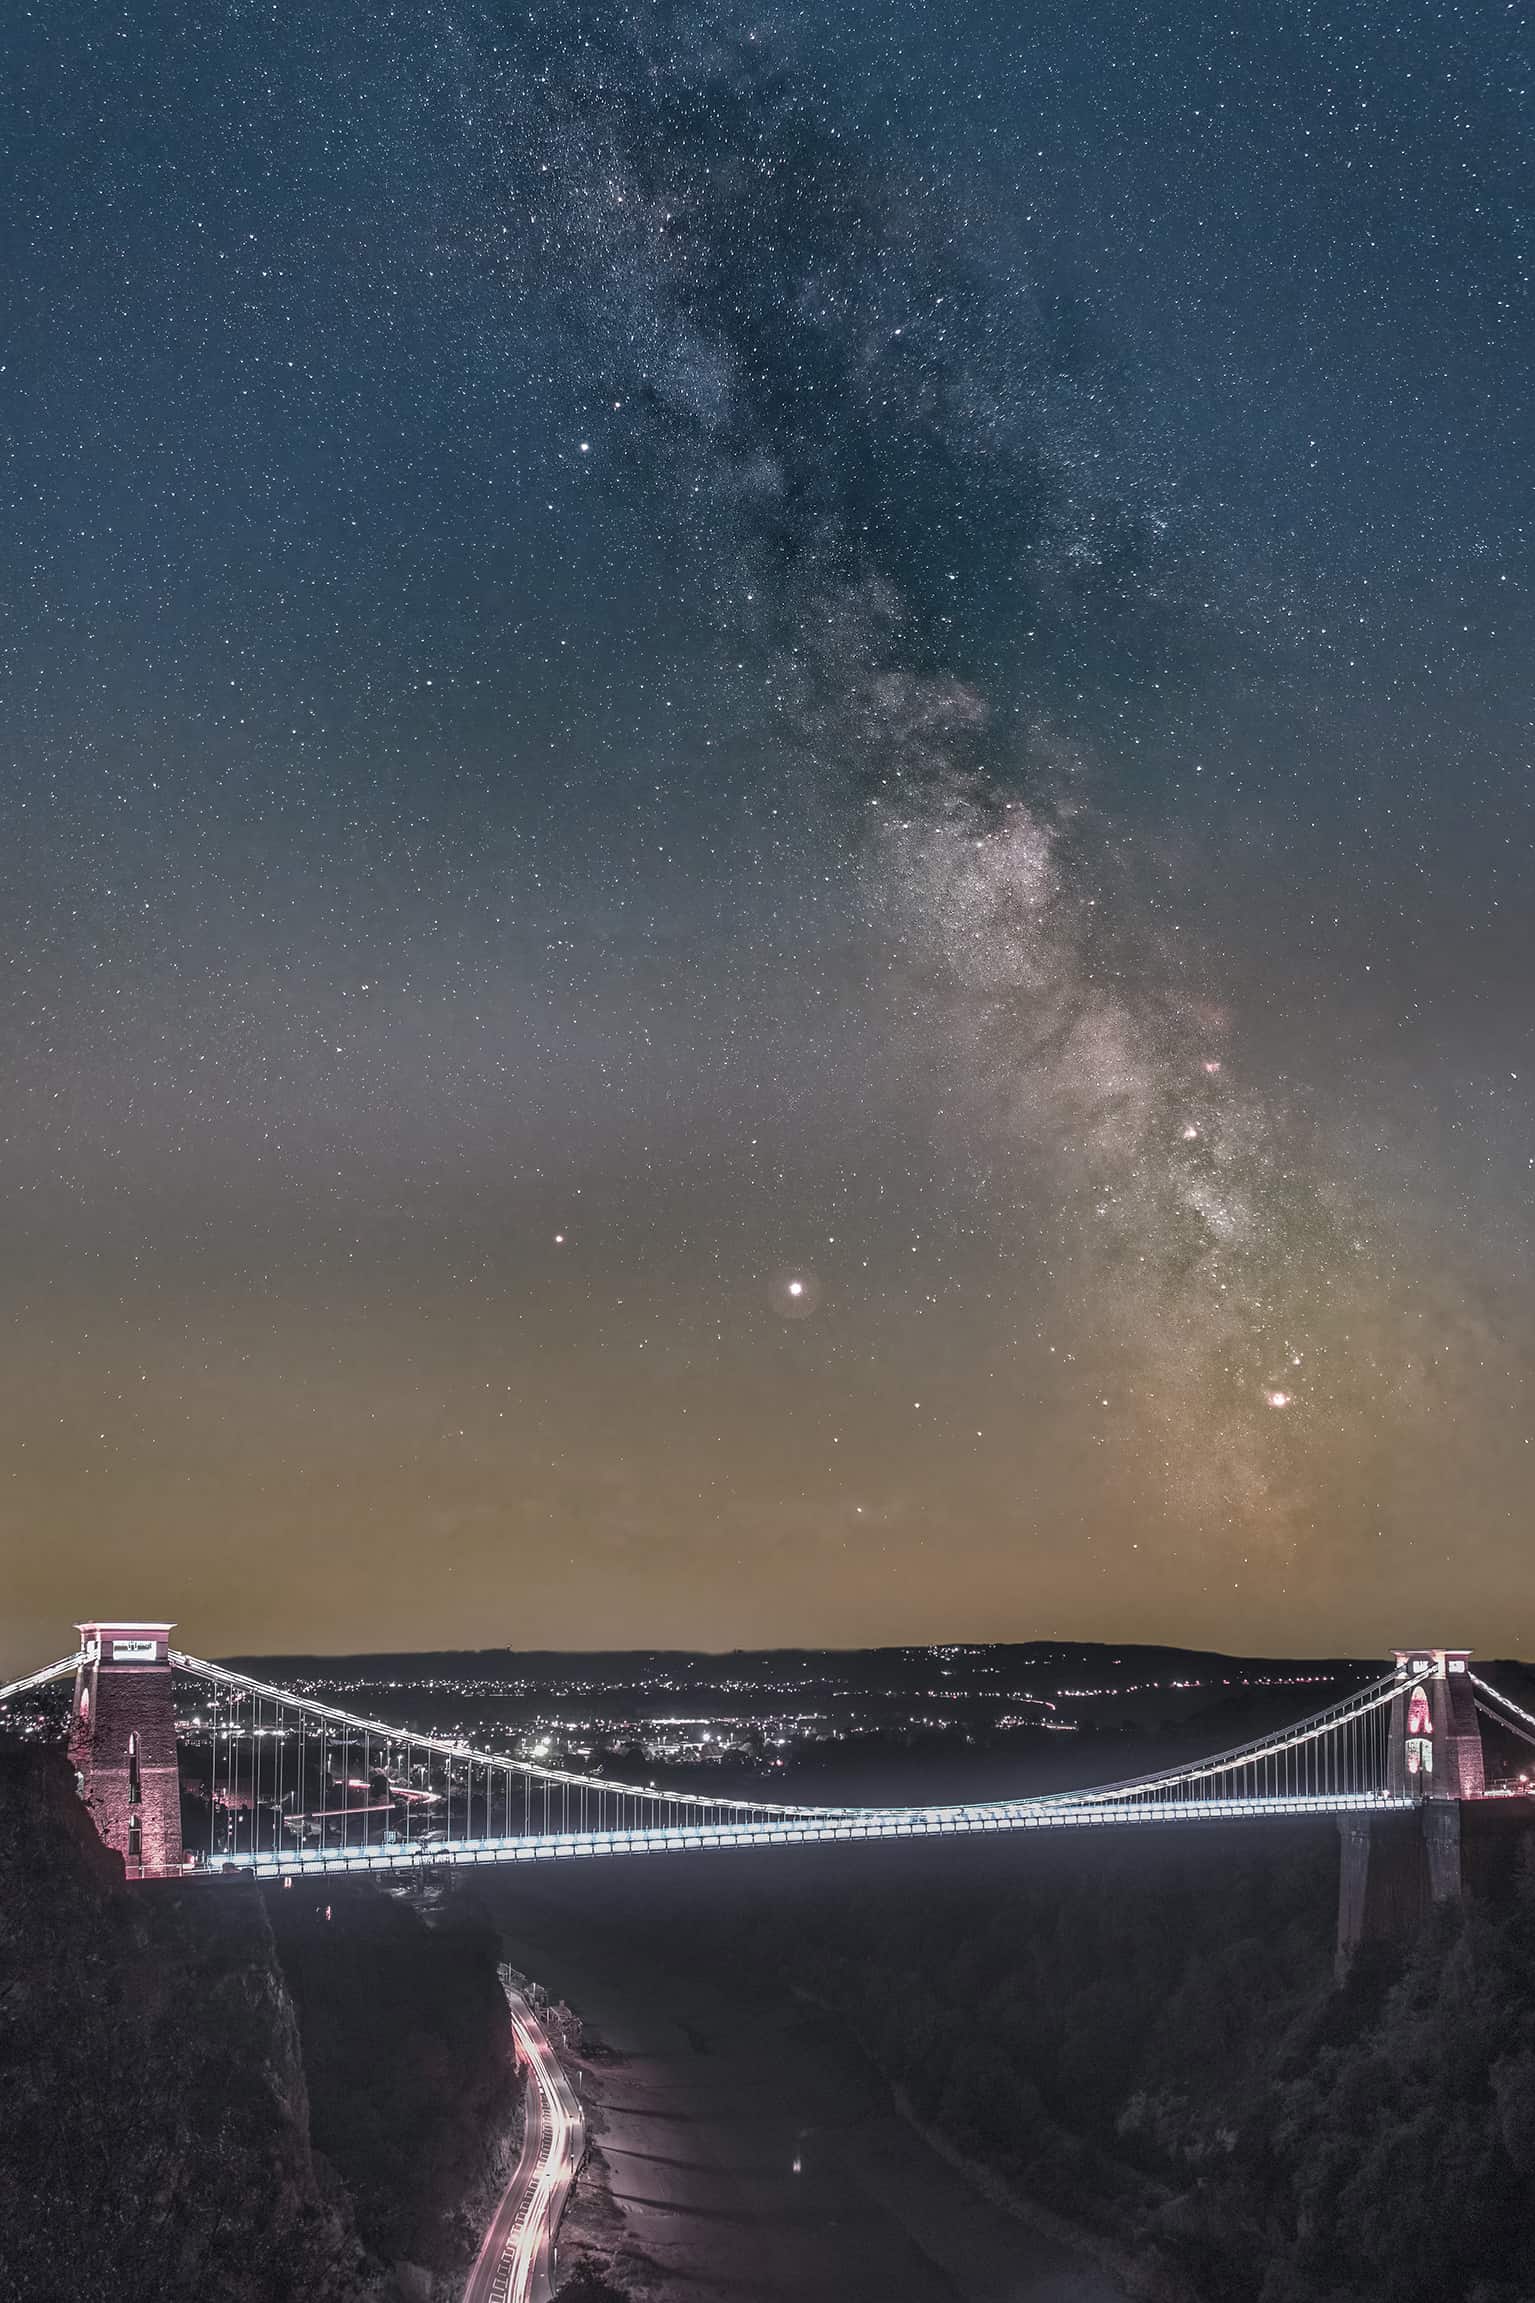 مشاهدة النجوم - جسر كليفتون في بريستول